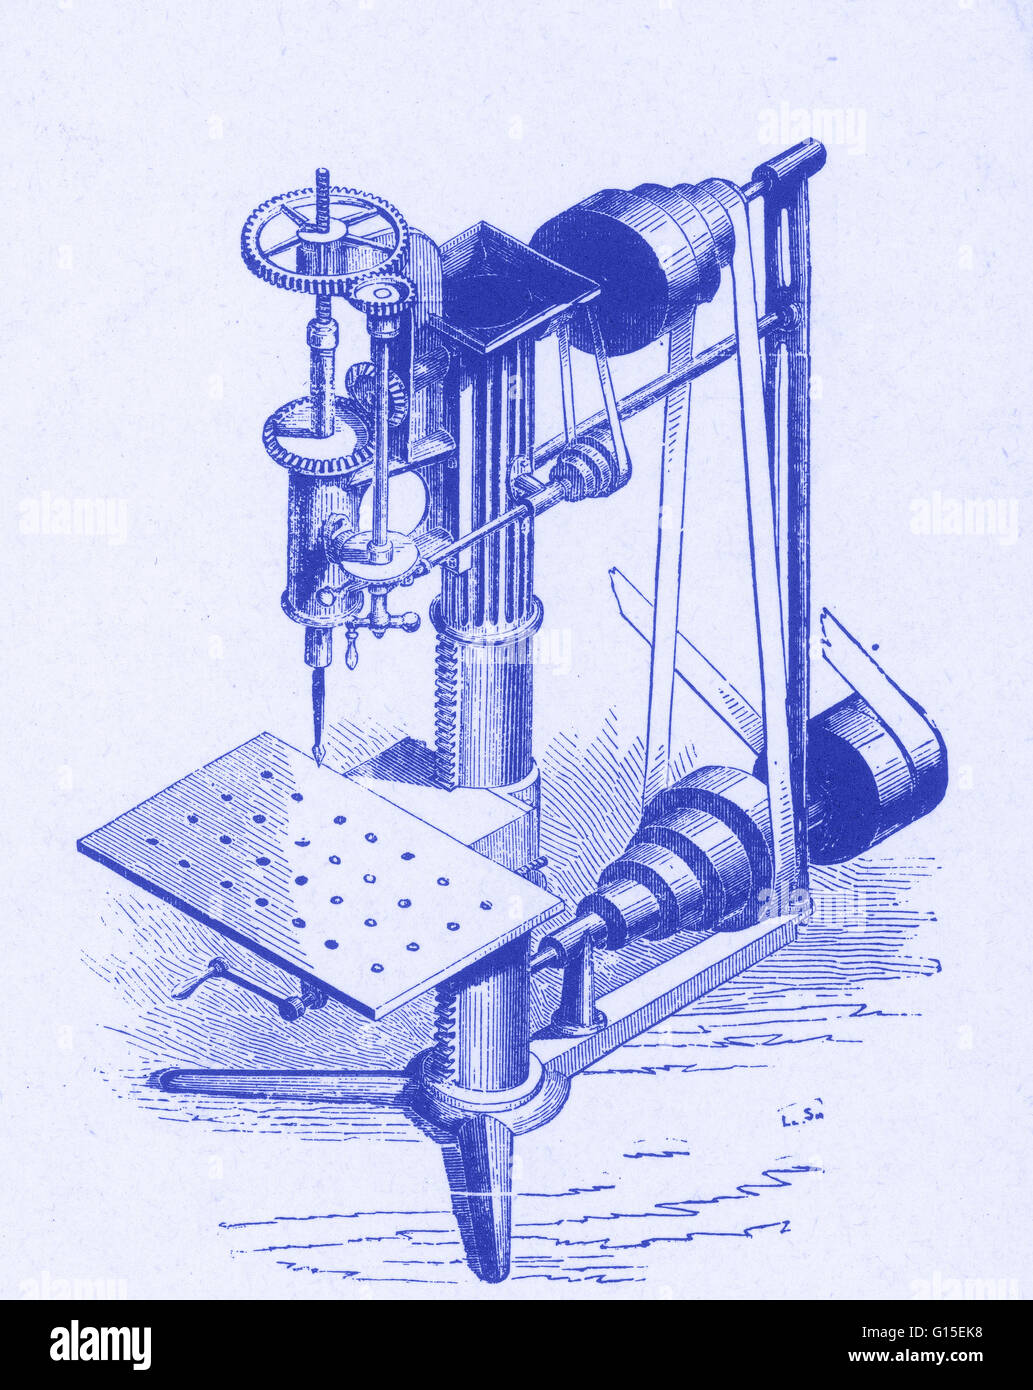 Eine motorisierte Präzision Bohrgerätpresse des Typs von Eli Whitney zu austauschbaren Waffenteile, eine Bohrmaschine (auch bekannt als ein Podest Bohrer, Säule Bohrer oder Bank Bohrer) ist einen festen Stil der Bohrer, der auf einem Ständer montiert oder verschraubt werden kann die Stockfoto